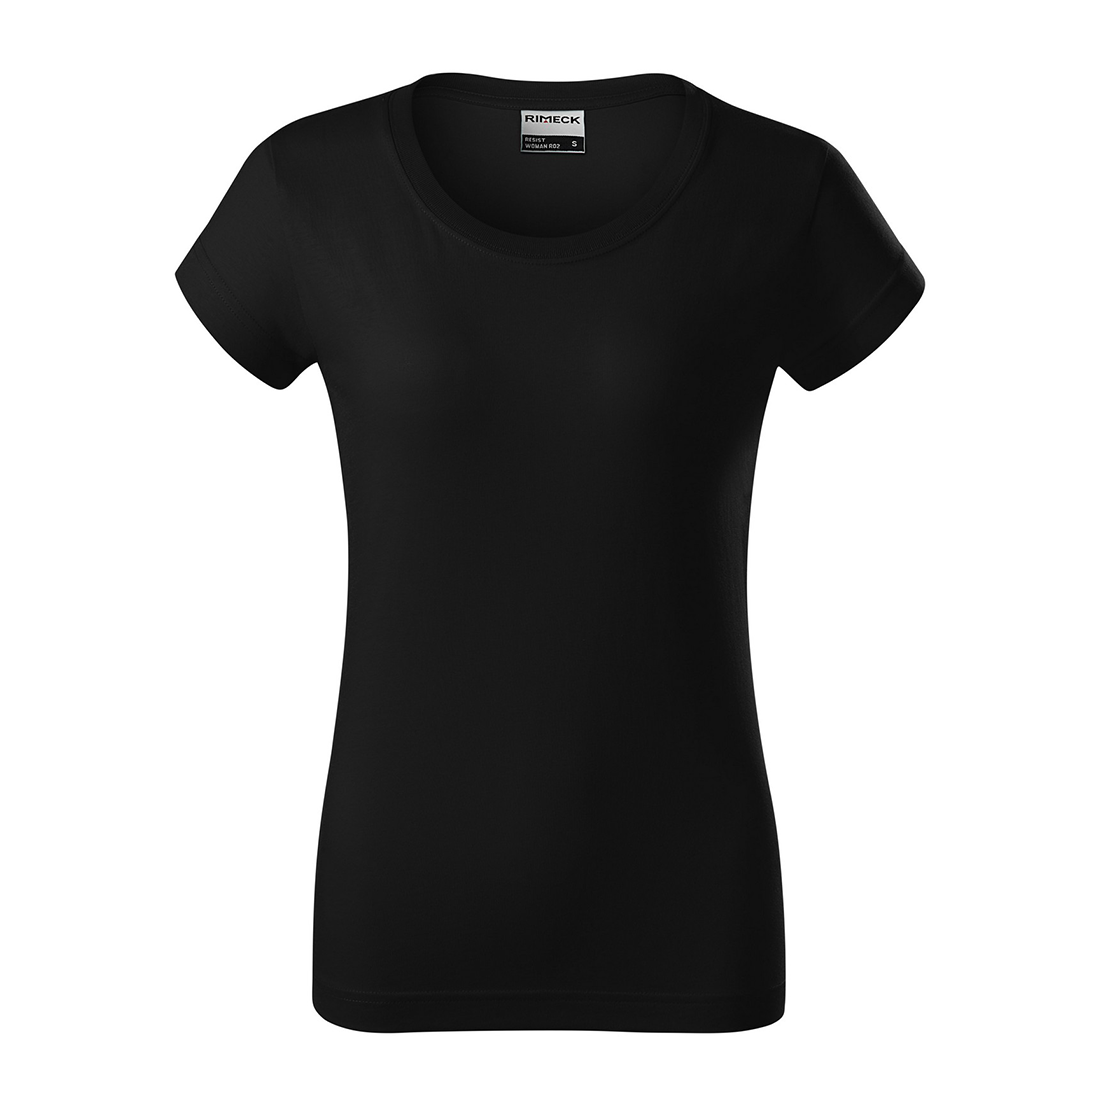 T-shirt en coton prélavé pour femme - Les vêtements de protection